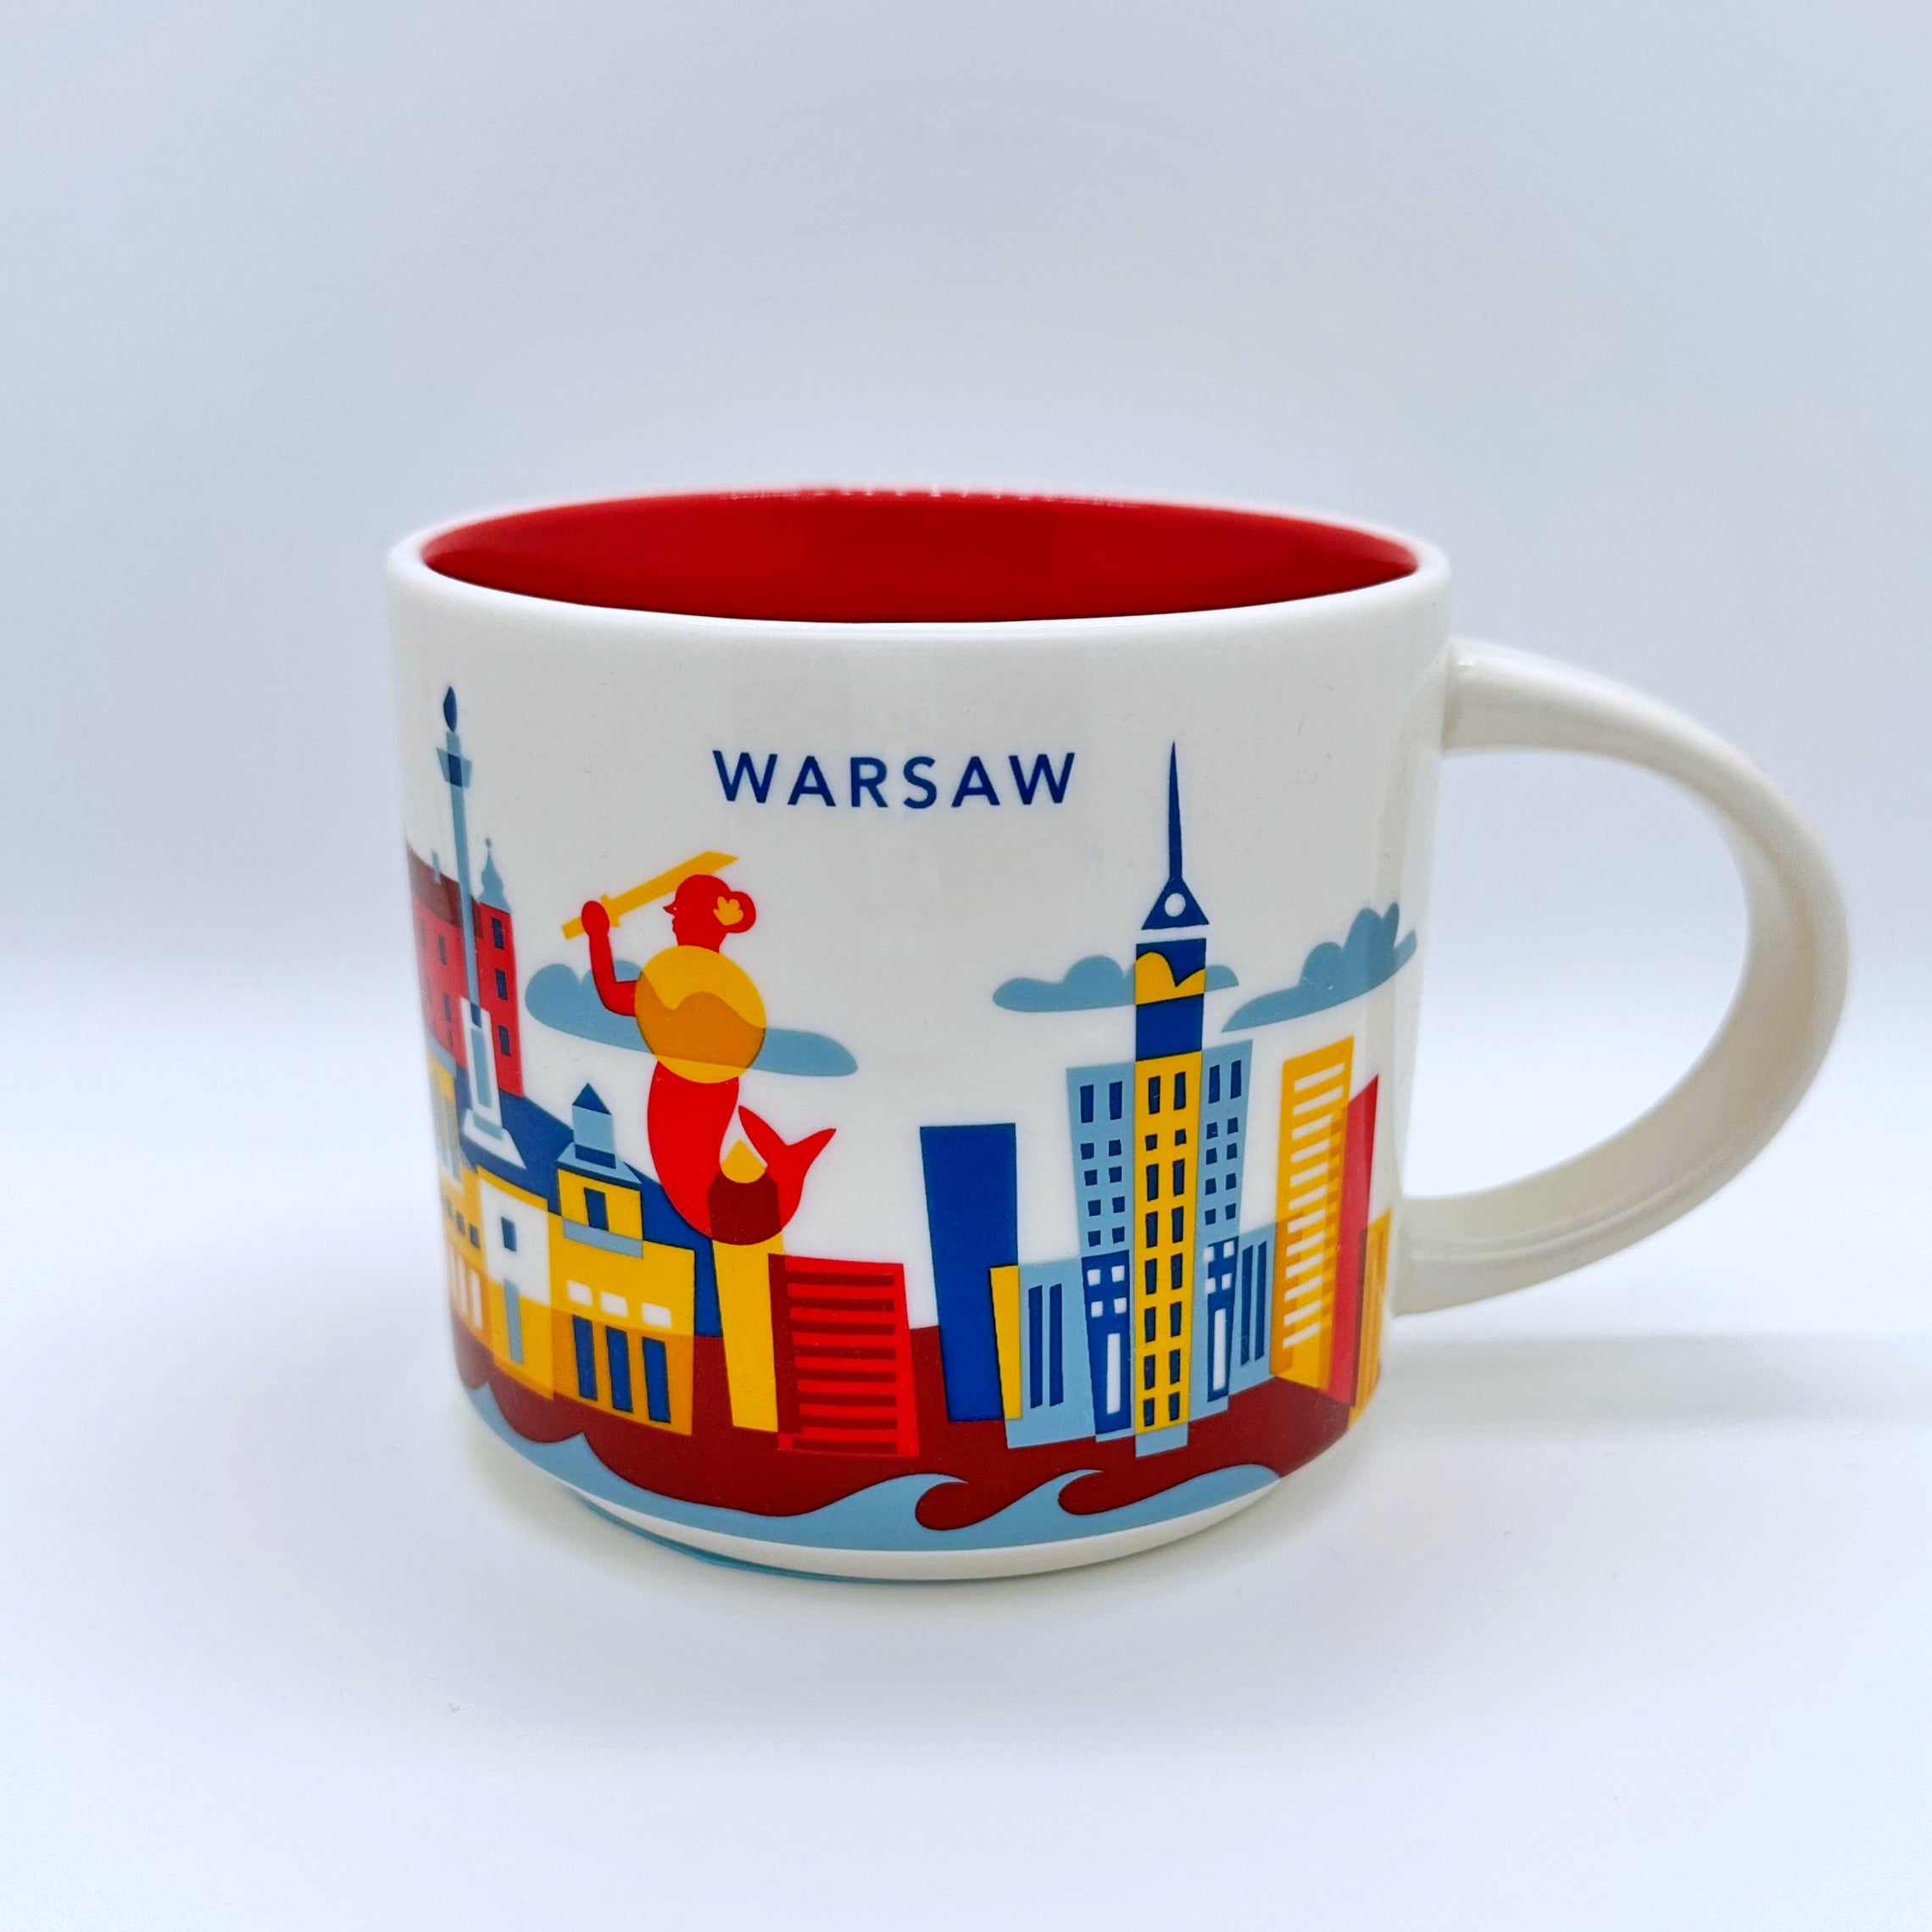 Kaffee Tee und Cappuccino Tasse von Starbucks mit gemalten Bildern aus der Stadt Warschau